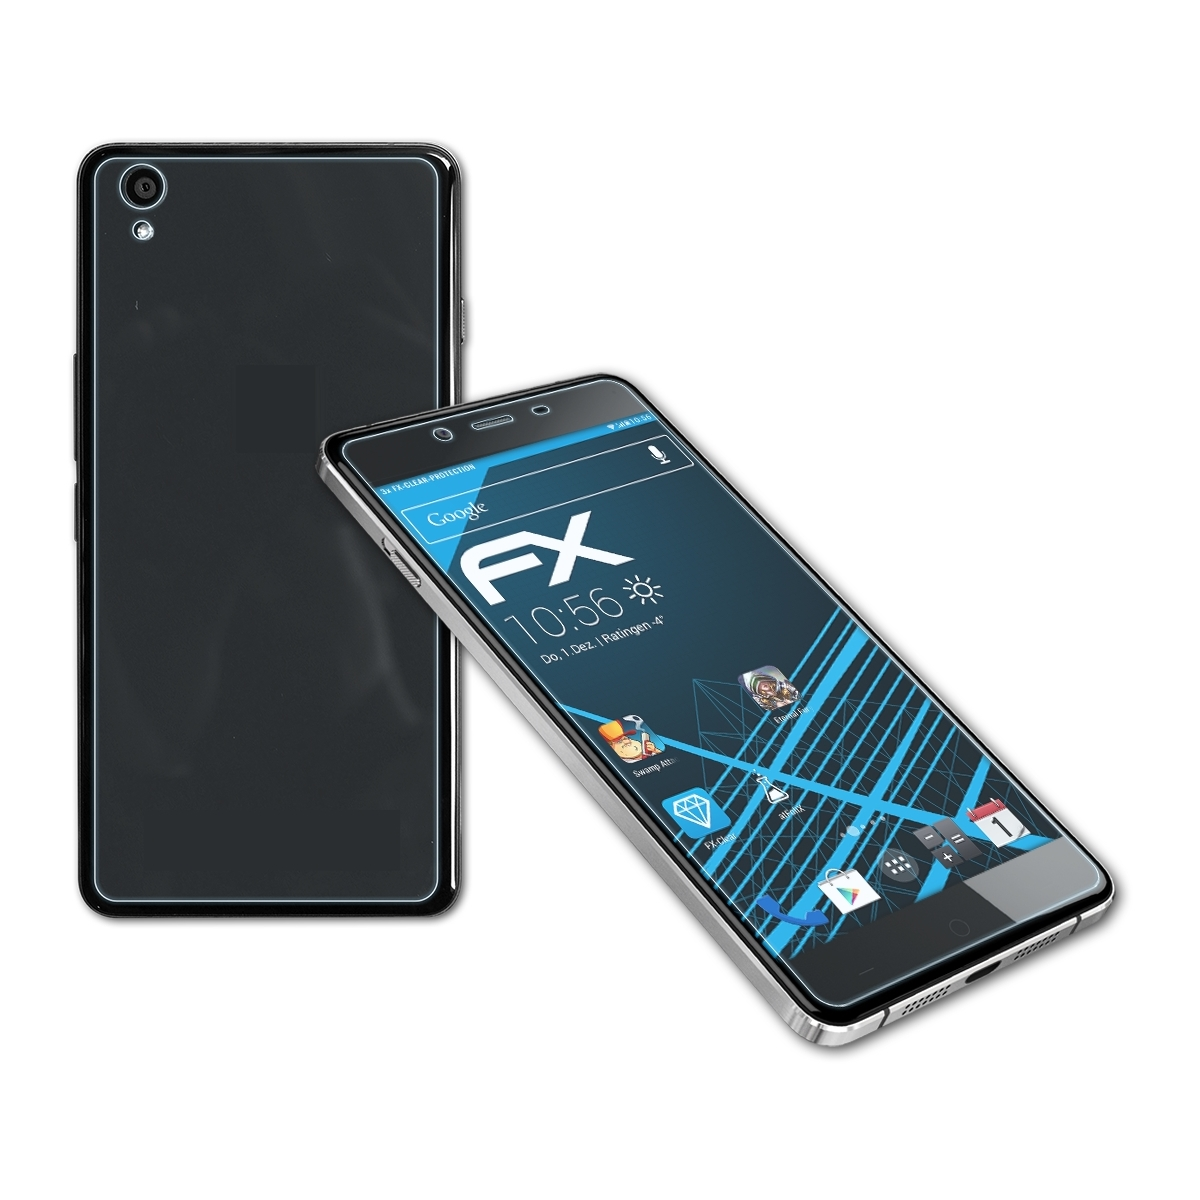 ATFOLIX 3x OnePlus Displayschutz(für FX-Clear X)